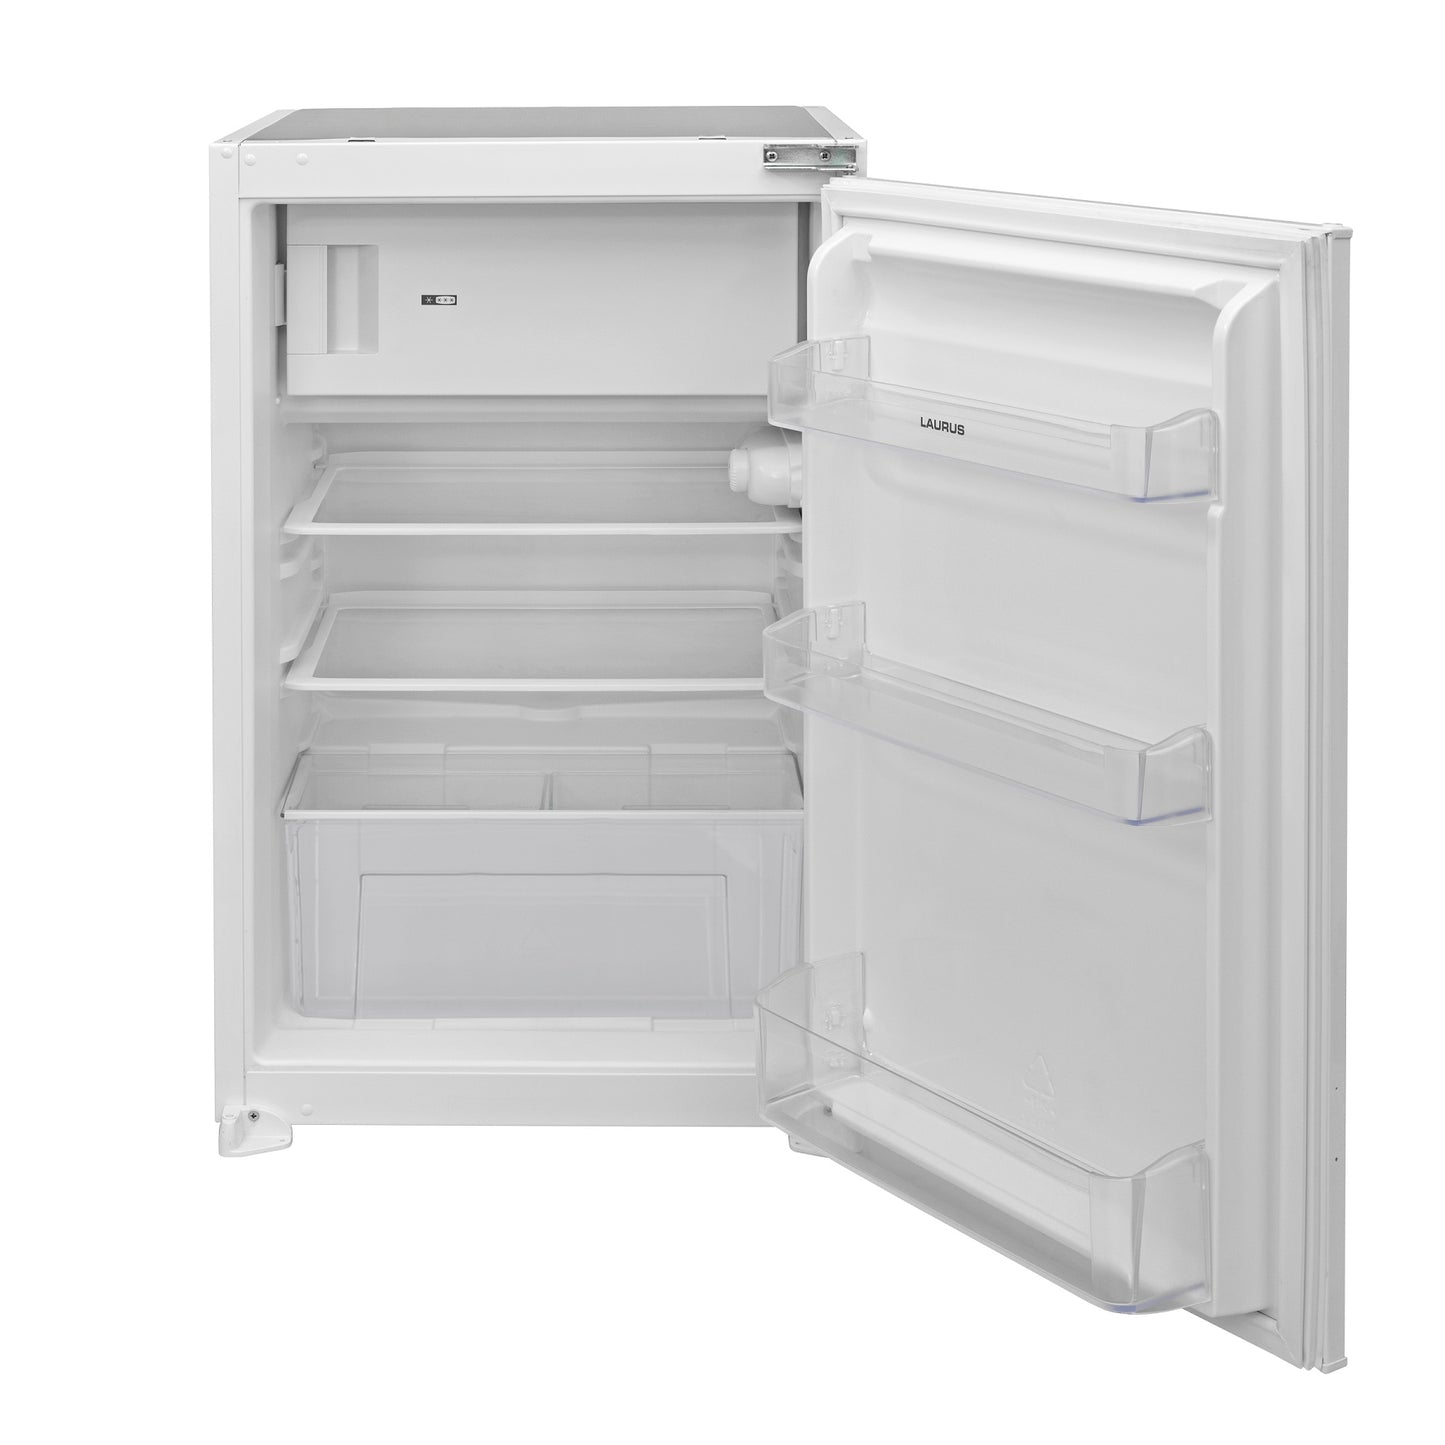 PKW 018019 kitchen unit 180 cm, cupboards in concrete white-gray